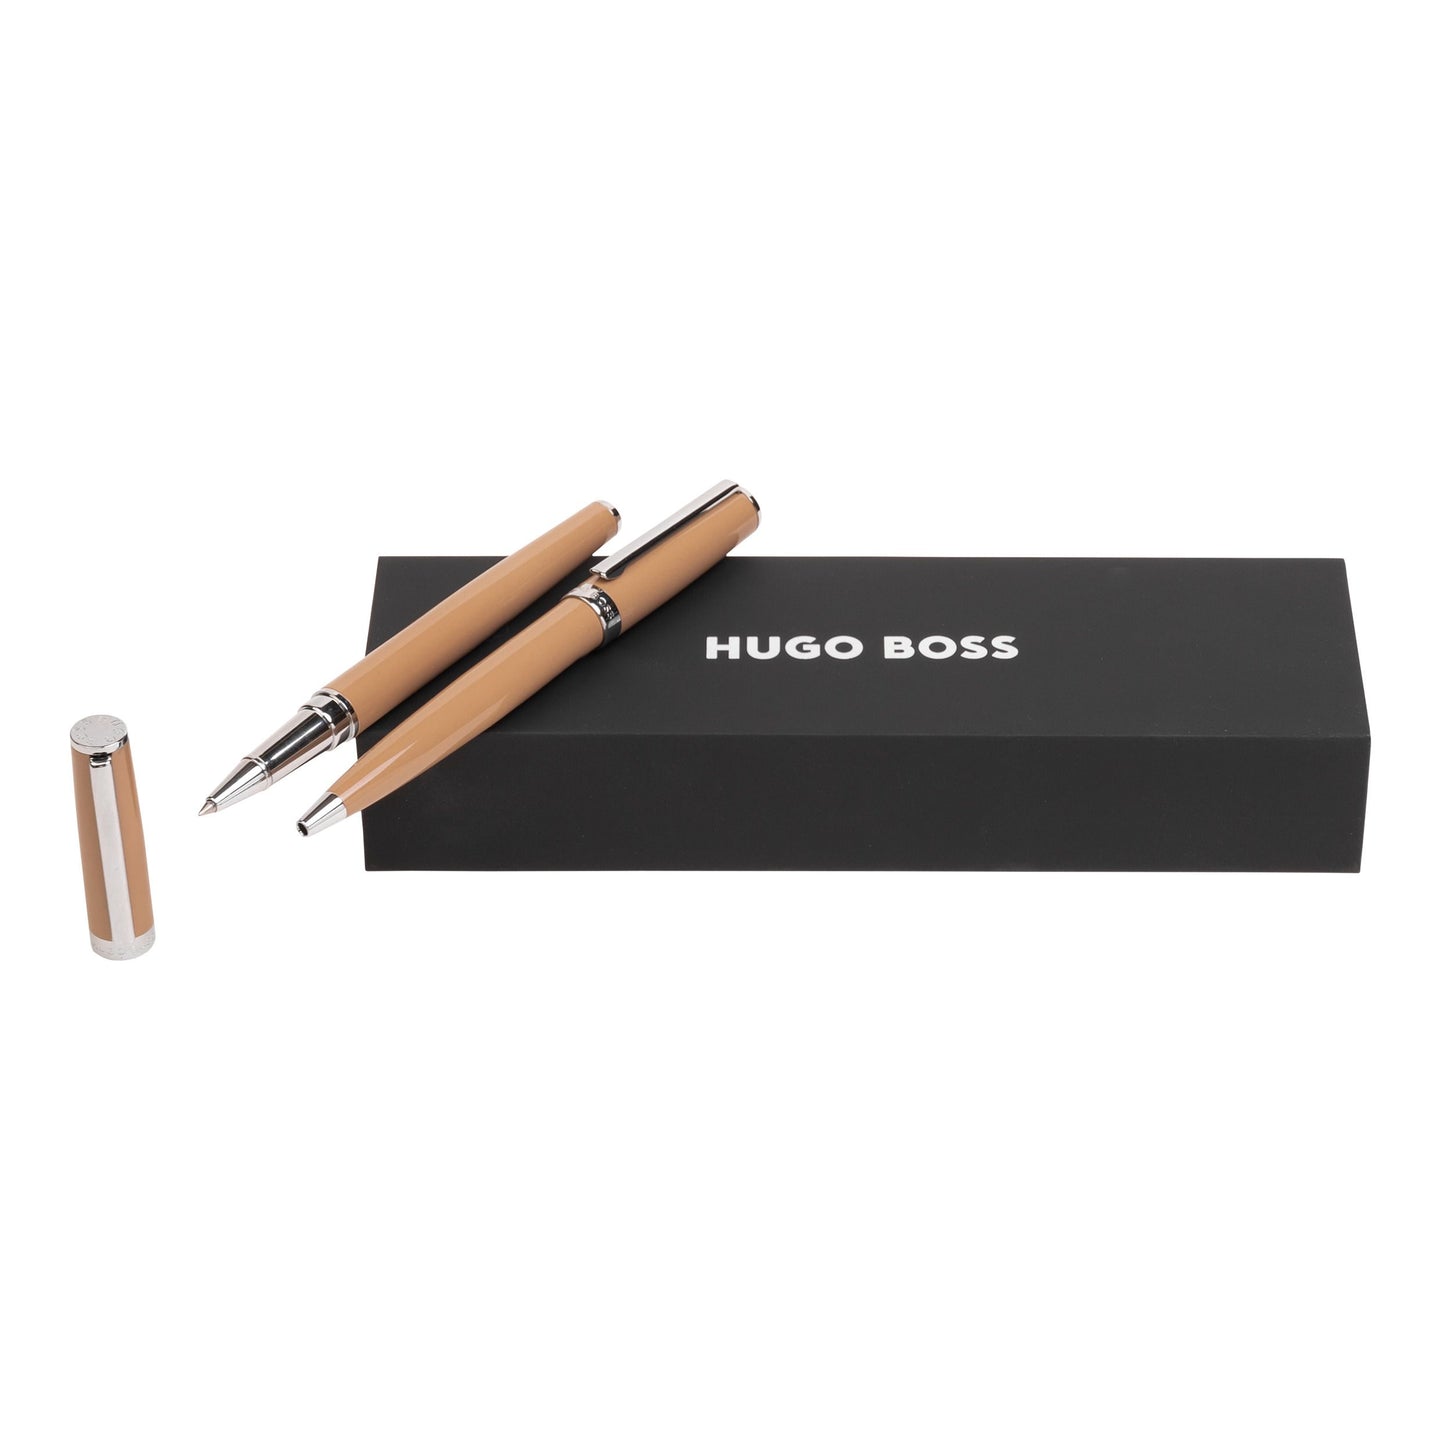 Hugo Boss Schreibset GEAR ICON Camel | Kugelschreiber und Tintenroller